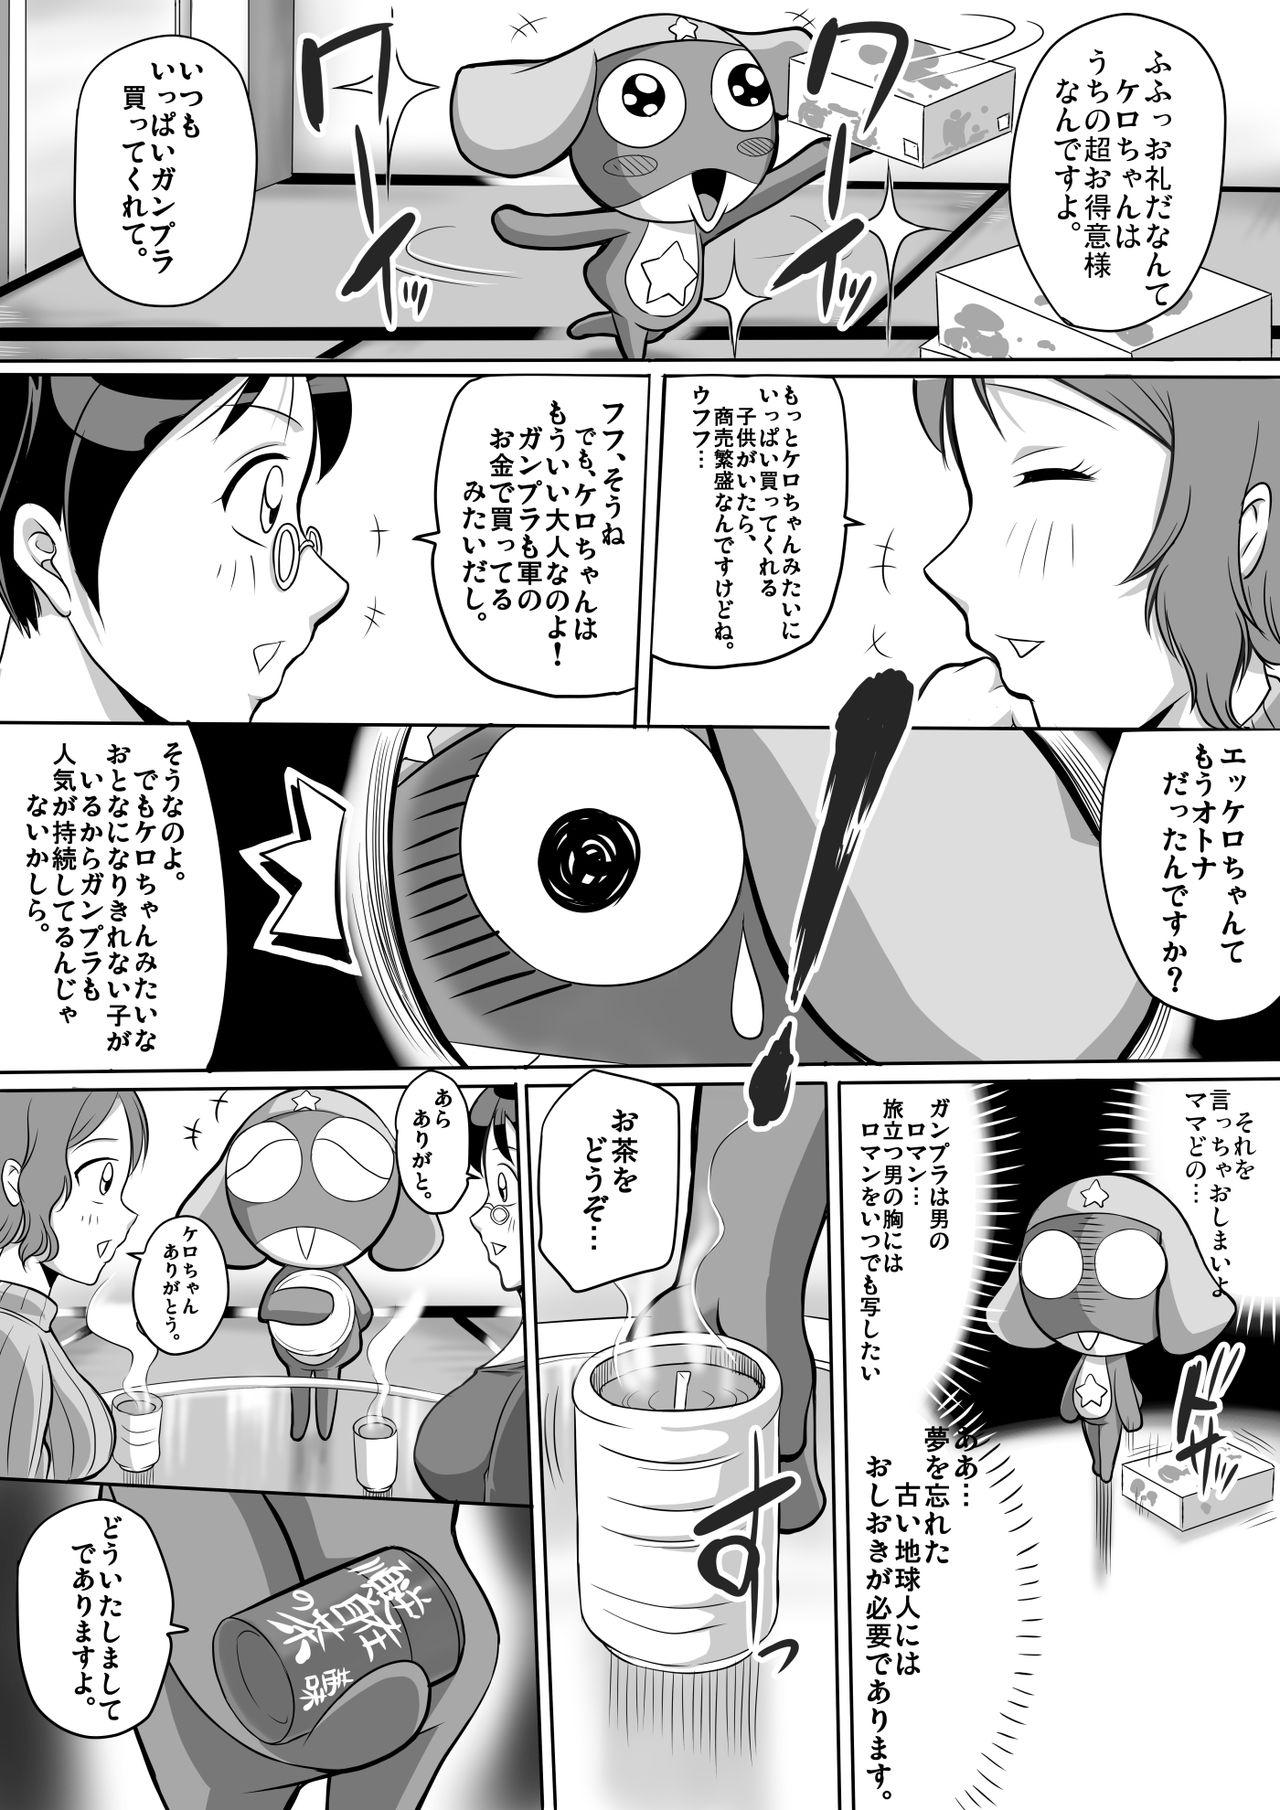 Cosplay Autumn no Ta wa, Taputapu no Ta!! - Gundam build fighters Gundam Keroro gunsou | sgt. frog Shecock - Page 4